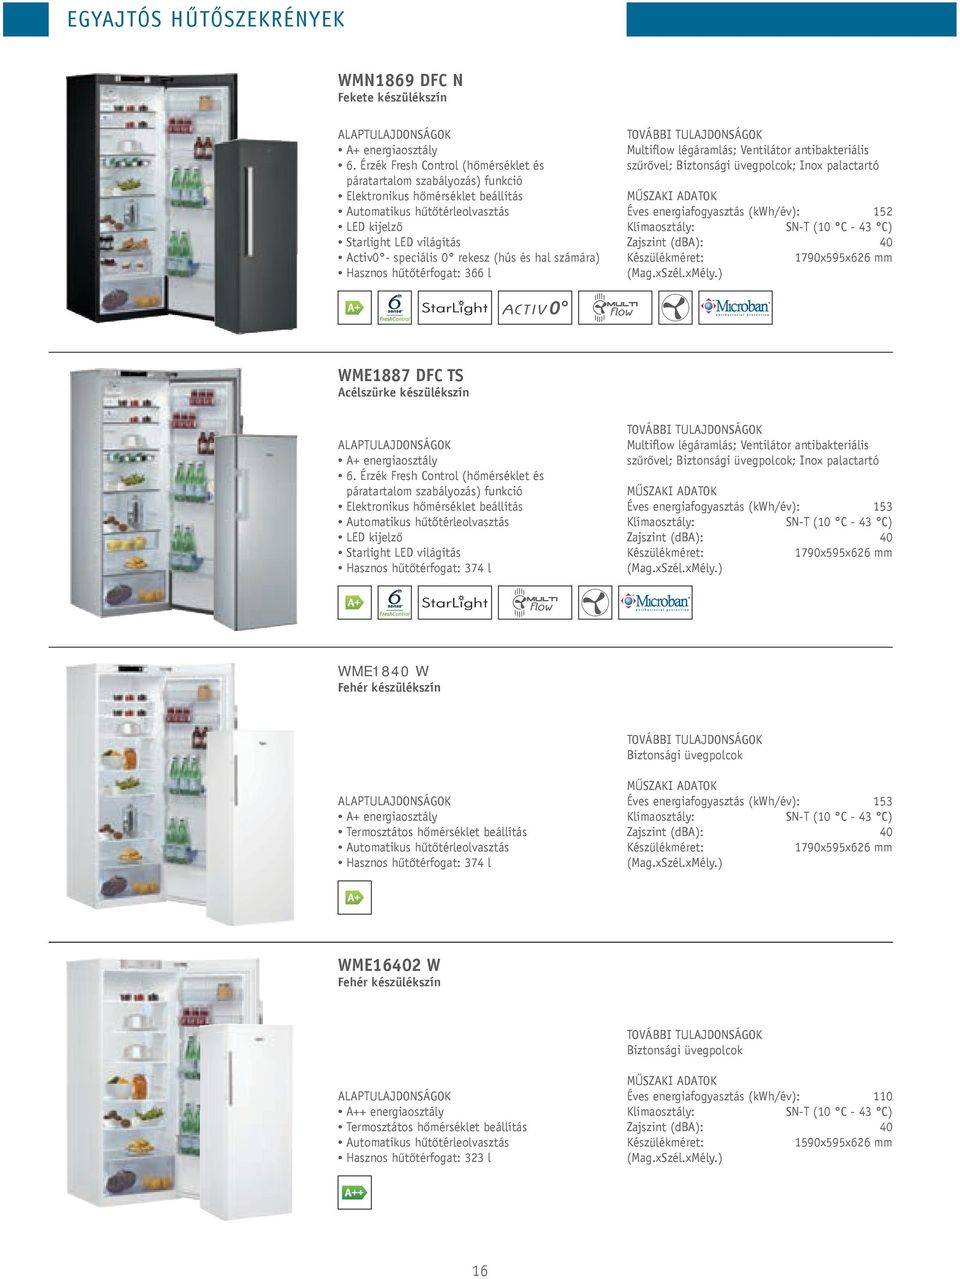 (hús és hal számára) Hasznos hűtőtérfogat: 366 l Multiflow légáramlás; ventilátor antibakteriális szűrővel; Biztonsági üvegpolcok; Inox palactartó Éves energiafogyasztás (kwh/év): 152 SN-t (10 C - 43